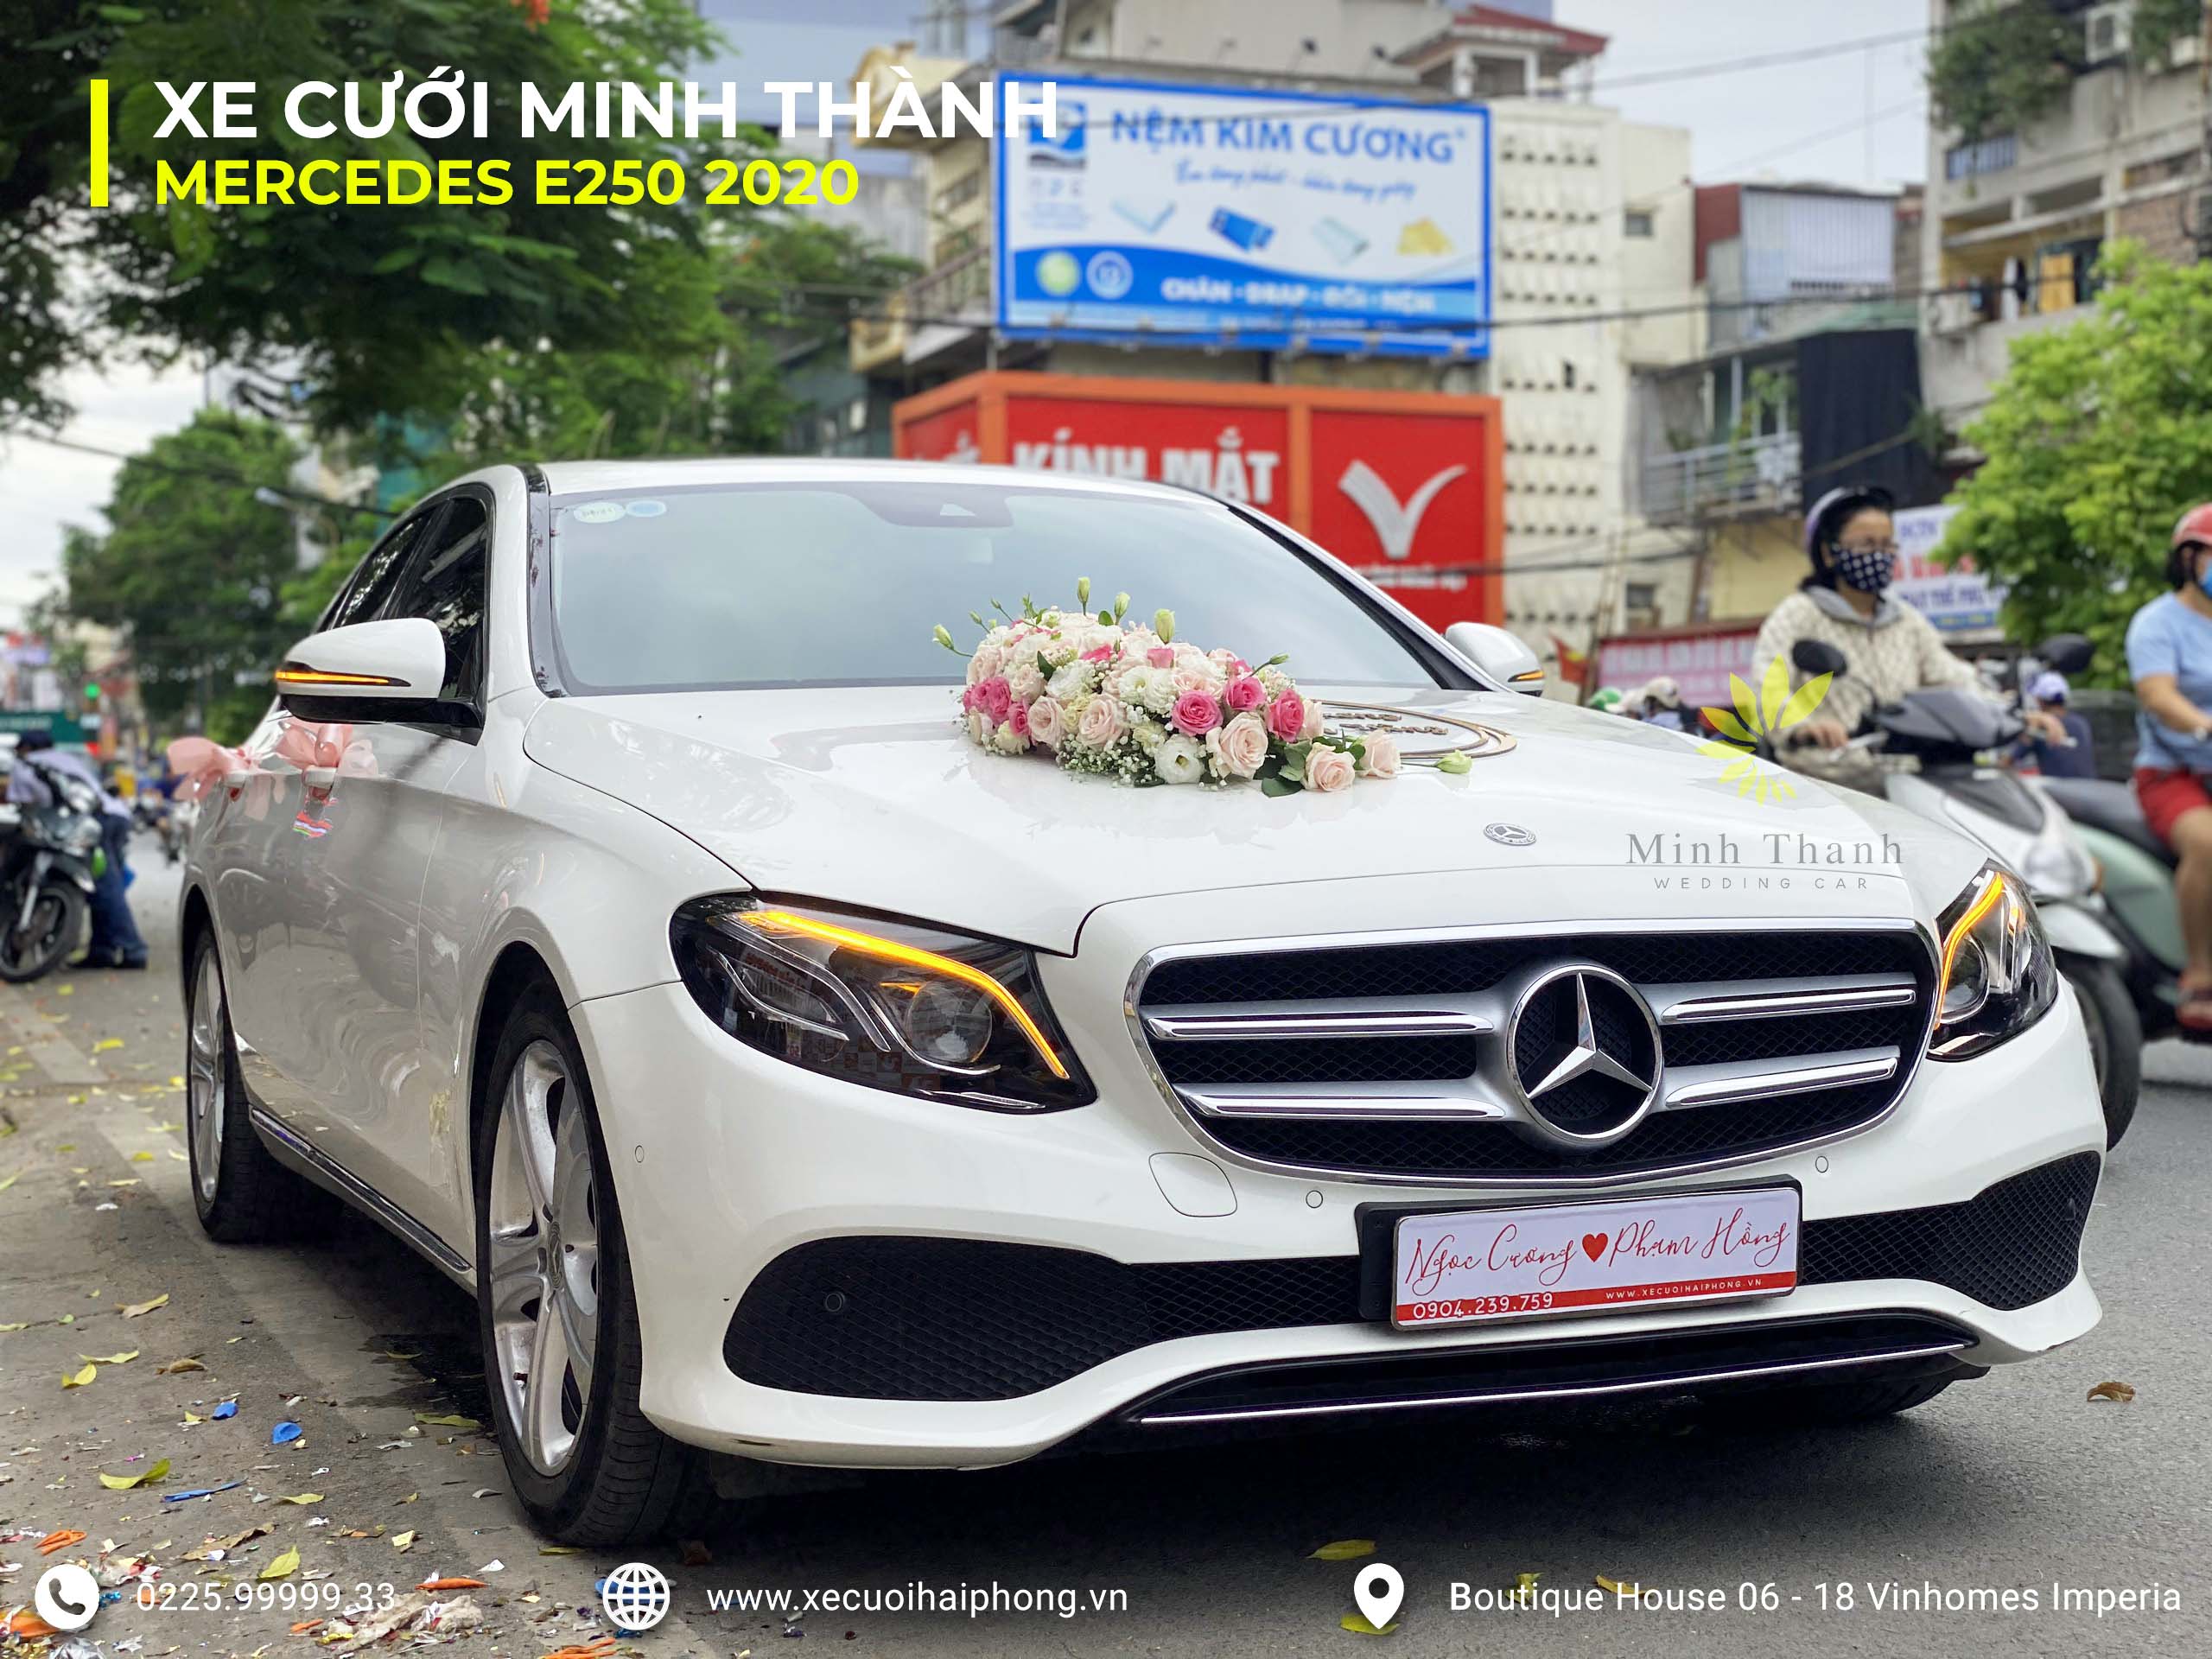 Cho thuê xe cưới Mercedes E300 đời mới | Xe cưới Minh Thành